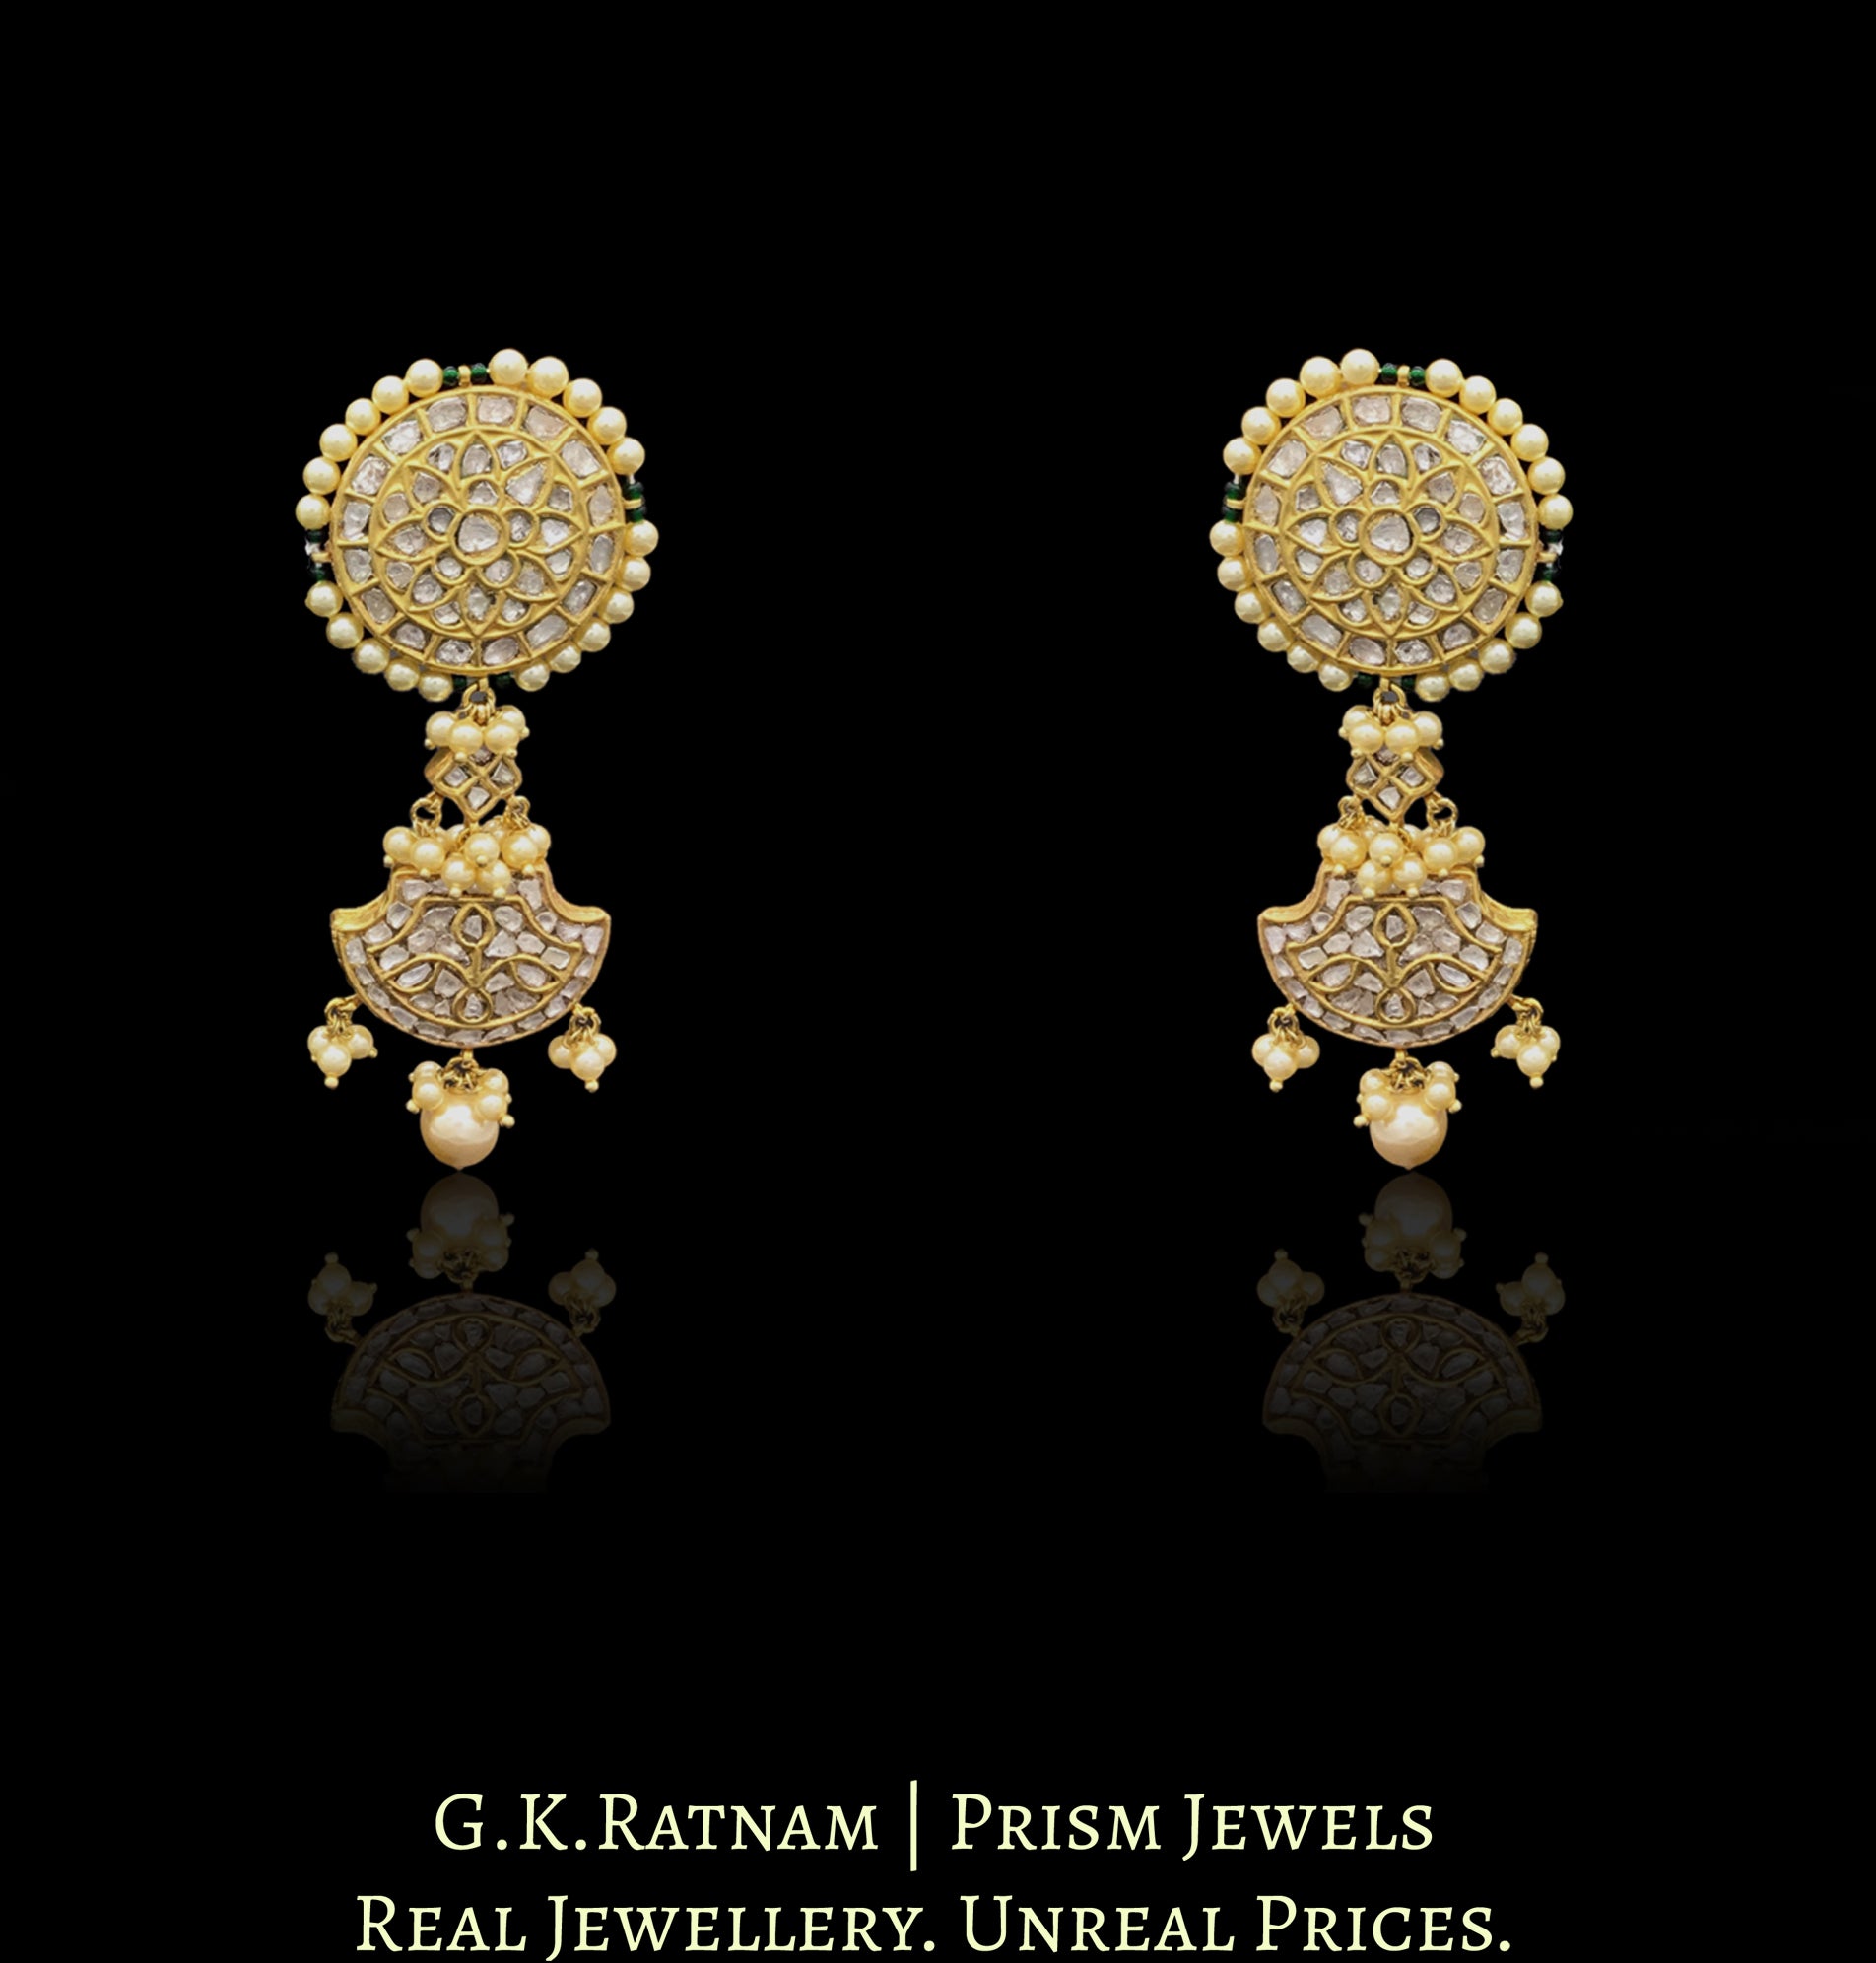 23k Gold and Diamond Polki Pankhi (fan) Necklace Set - G. K. Ratnam